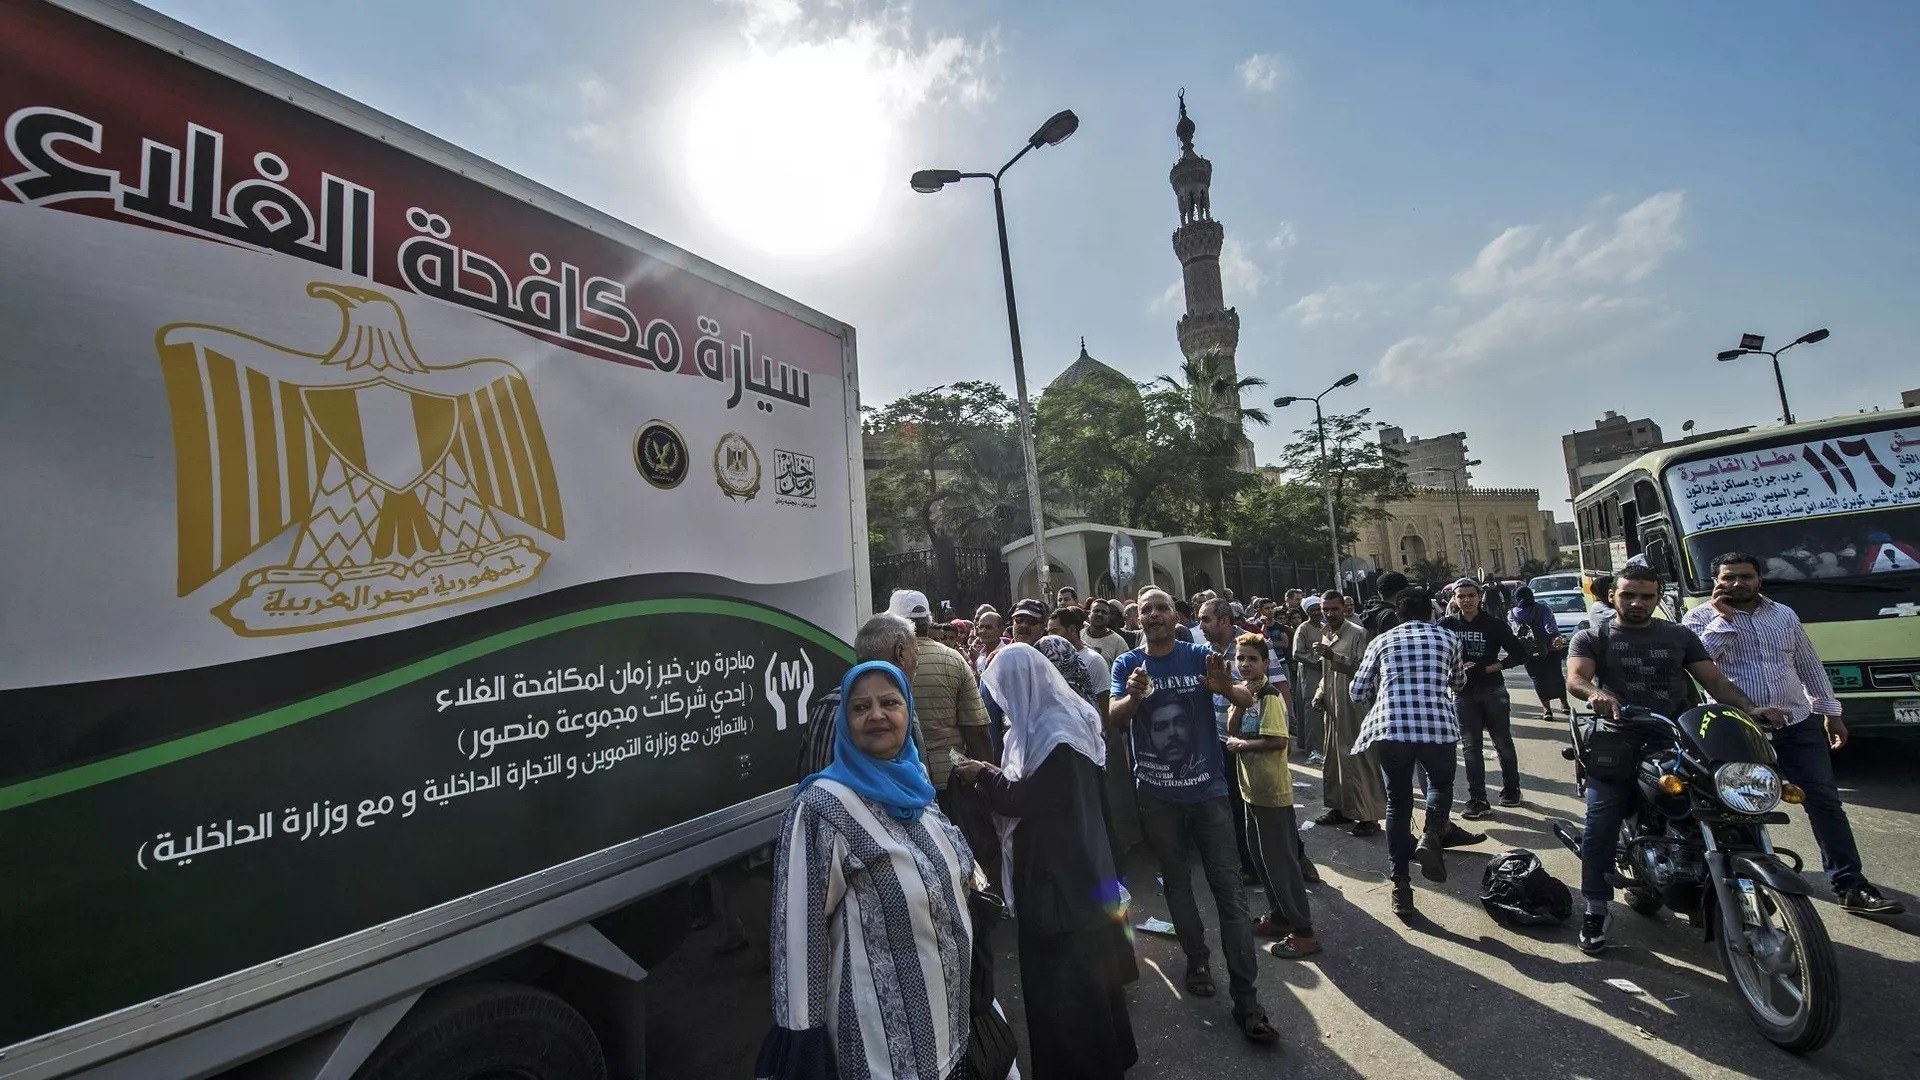 الحكومة المصرية تكشف عن خطتها لاحتواء موجة ارتفاع الأسعار